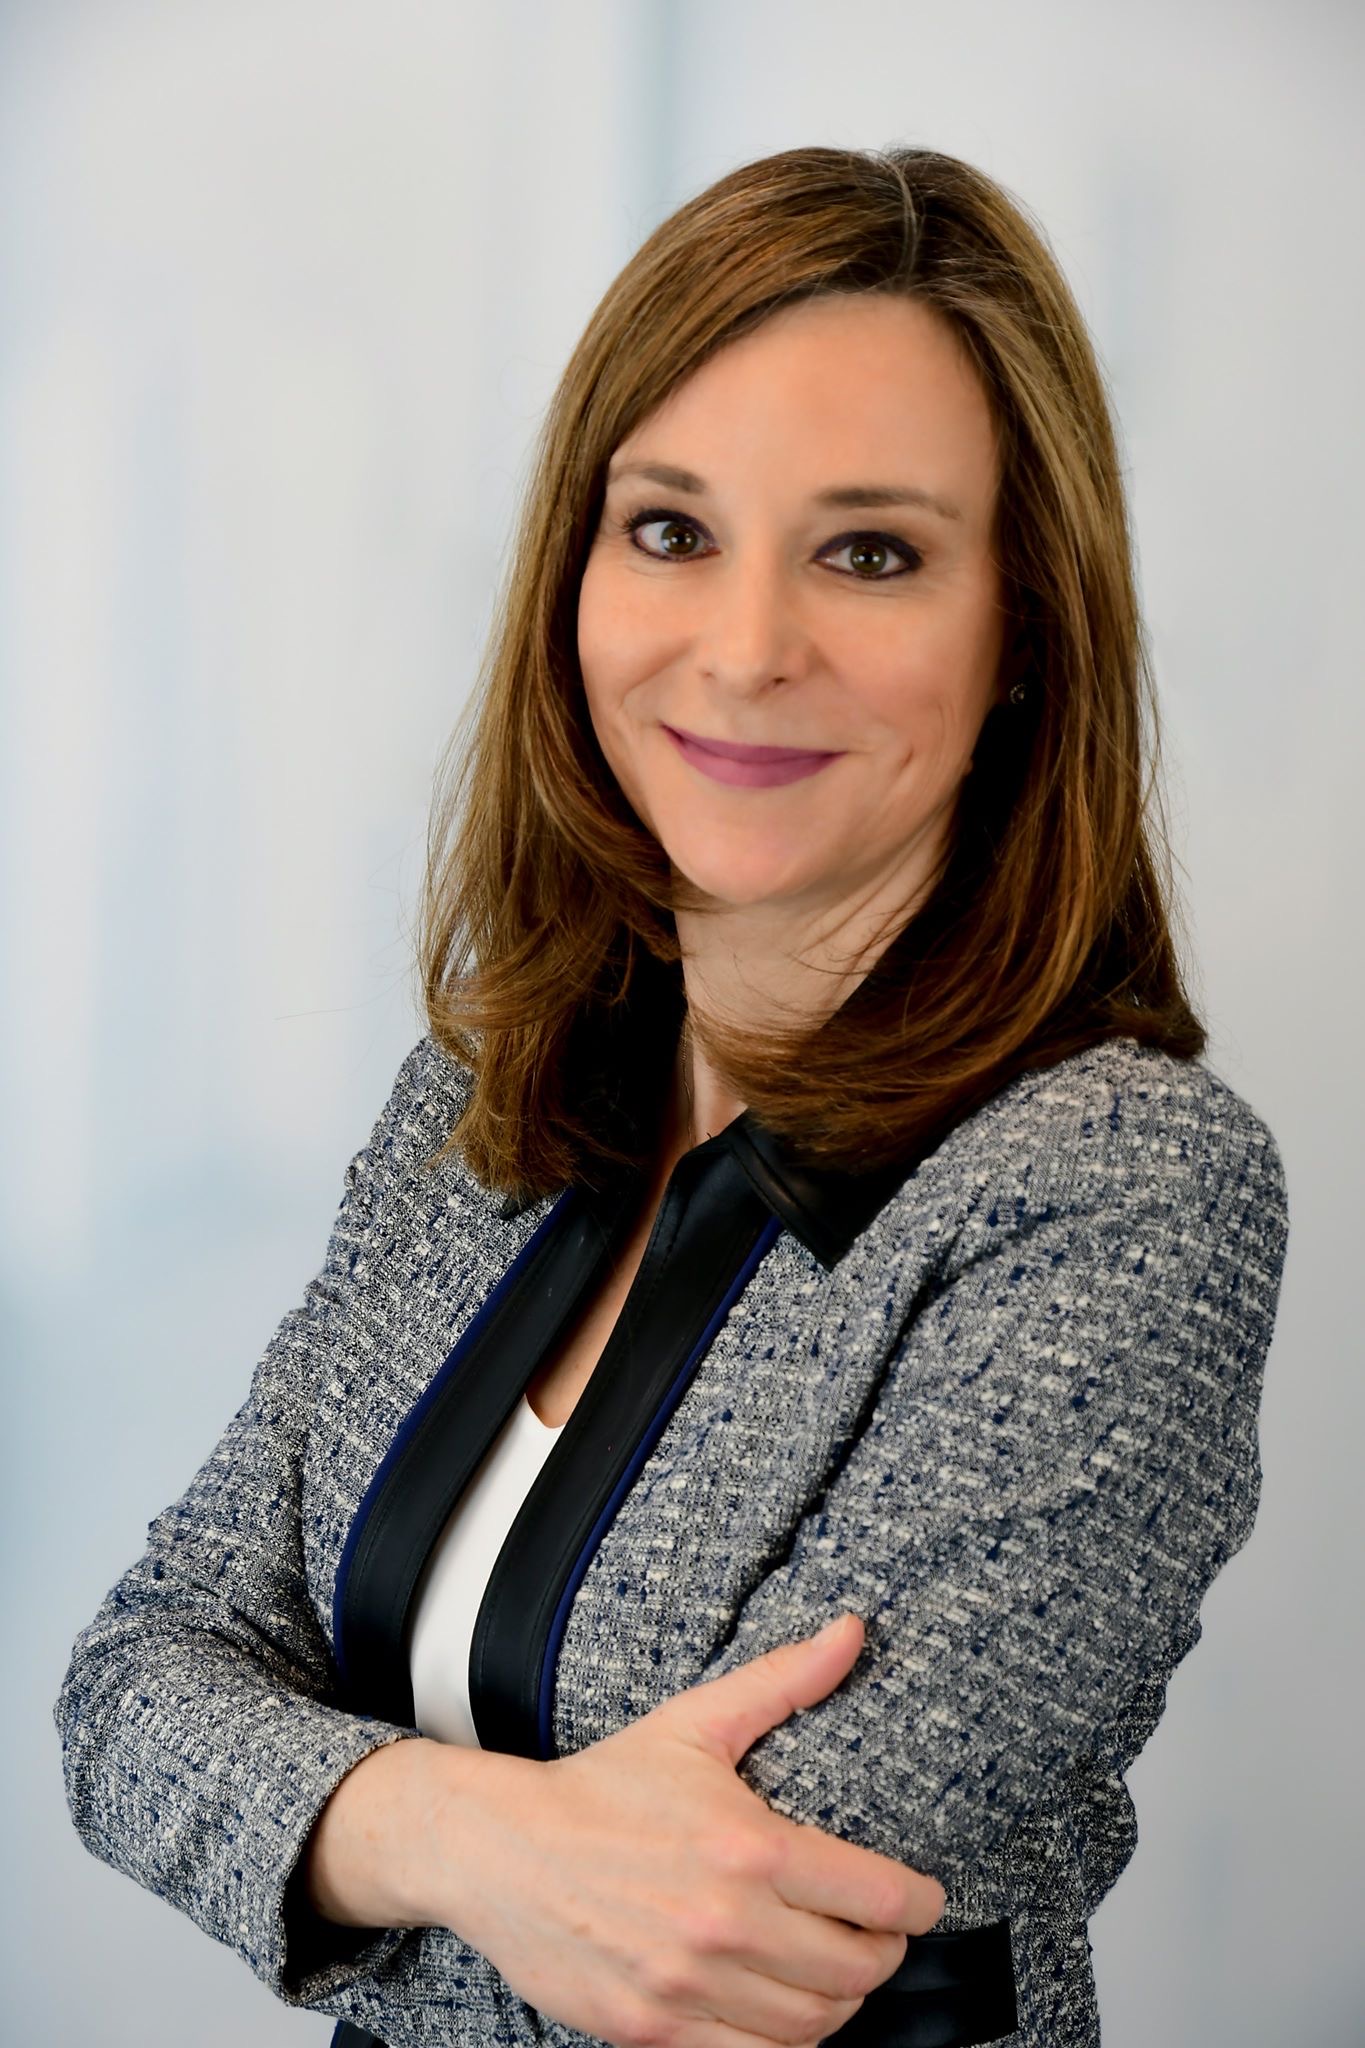 Modération : Sophie Lemieux, Vice-présidente, Marchés institutionnels, Fiera Capital Corporation